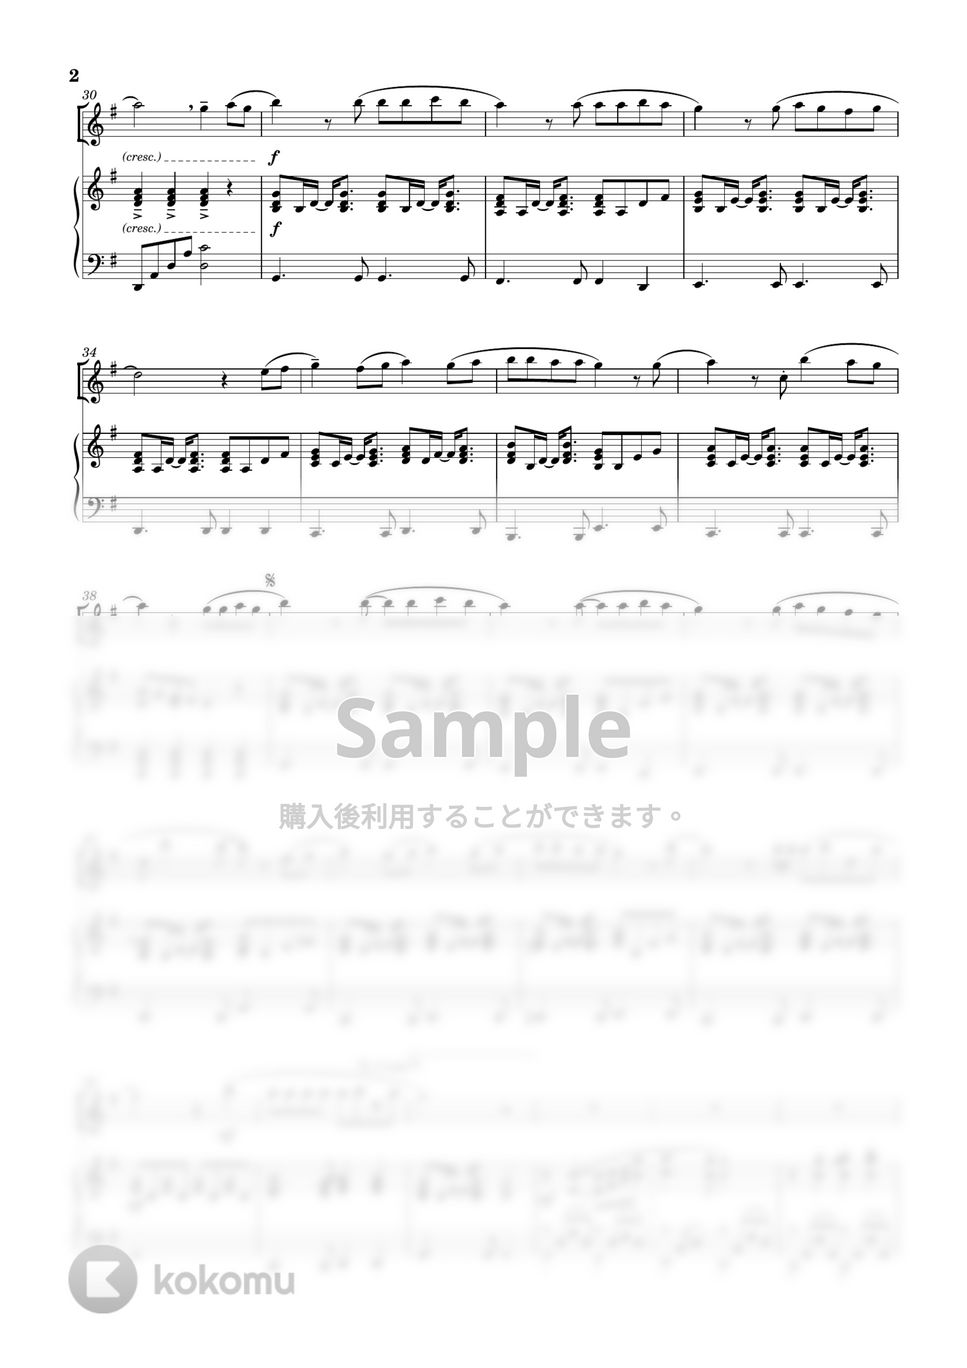 AKB48 - 365日の紙飛行機 (ソロ(in C) / ピアノ伴奏) by Tawa